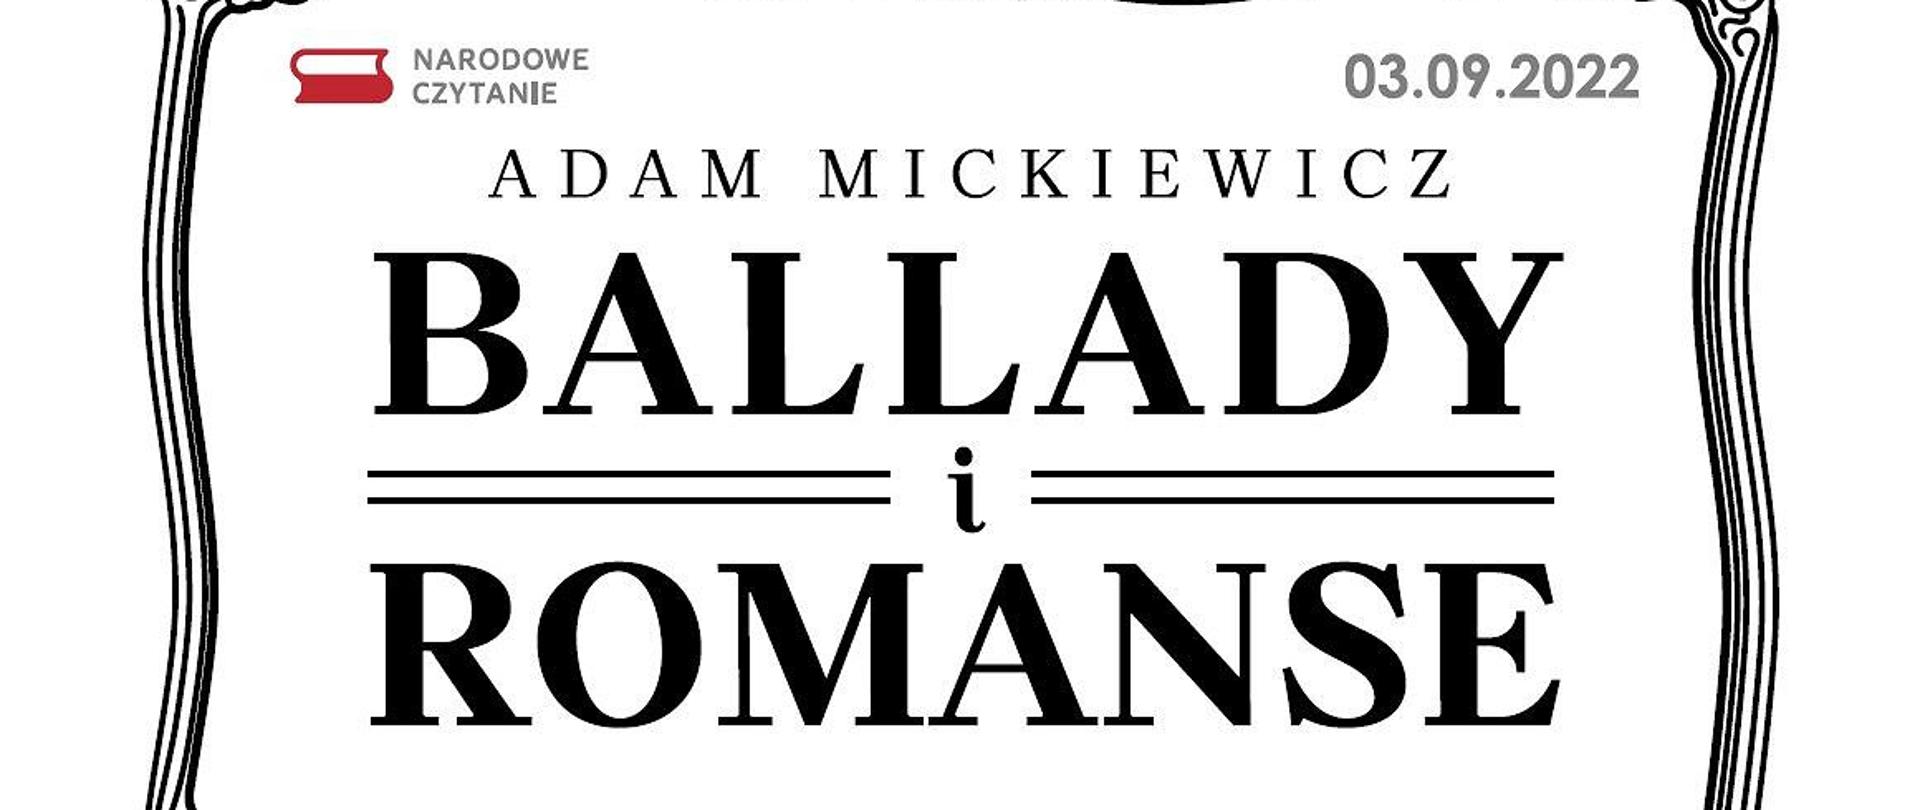 Adam Mickiewicz "Ballady i romanse"